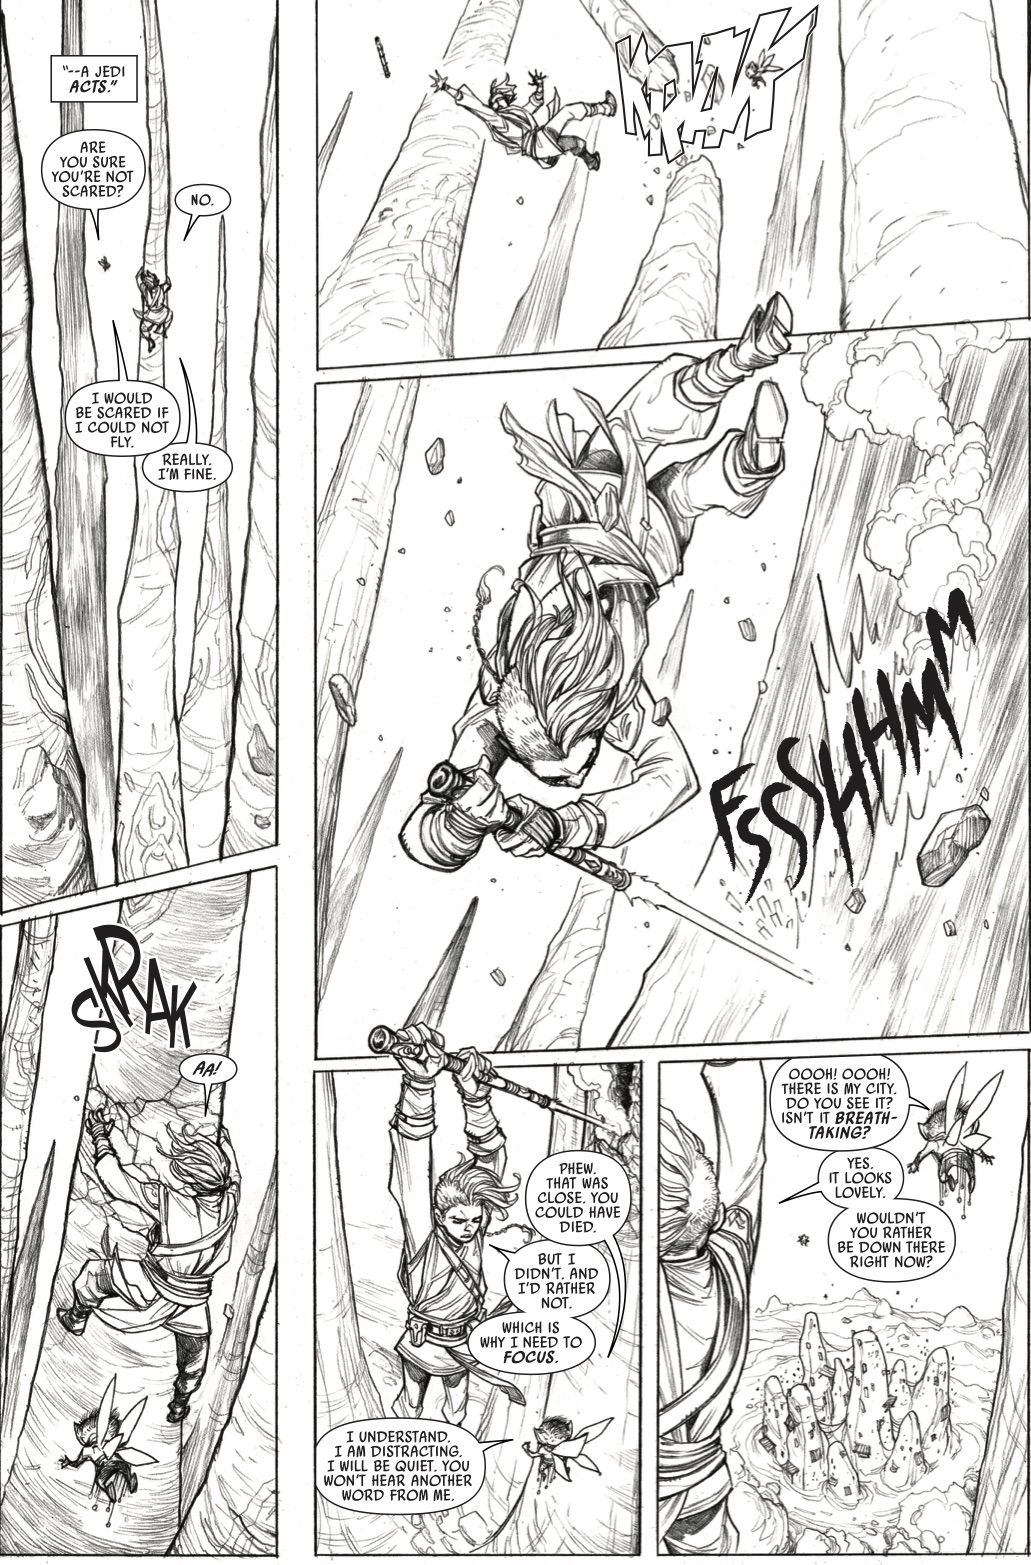 Keeve Trennis faller nerför en klippa med sin ljussabel i The HIgh Republic Marvel Comic # 1